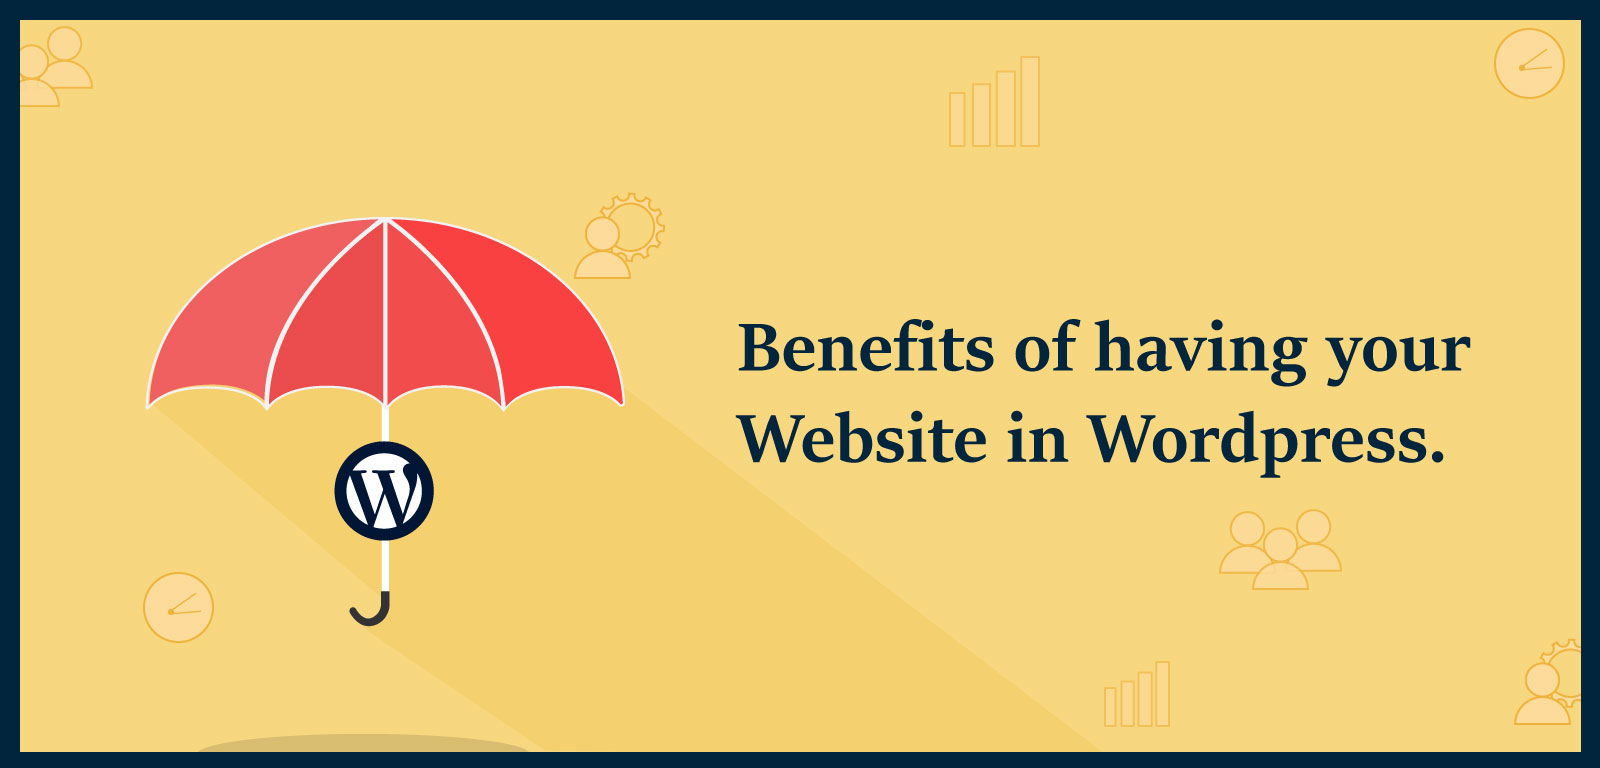 Benefits of having your website in WordPress